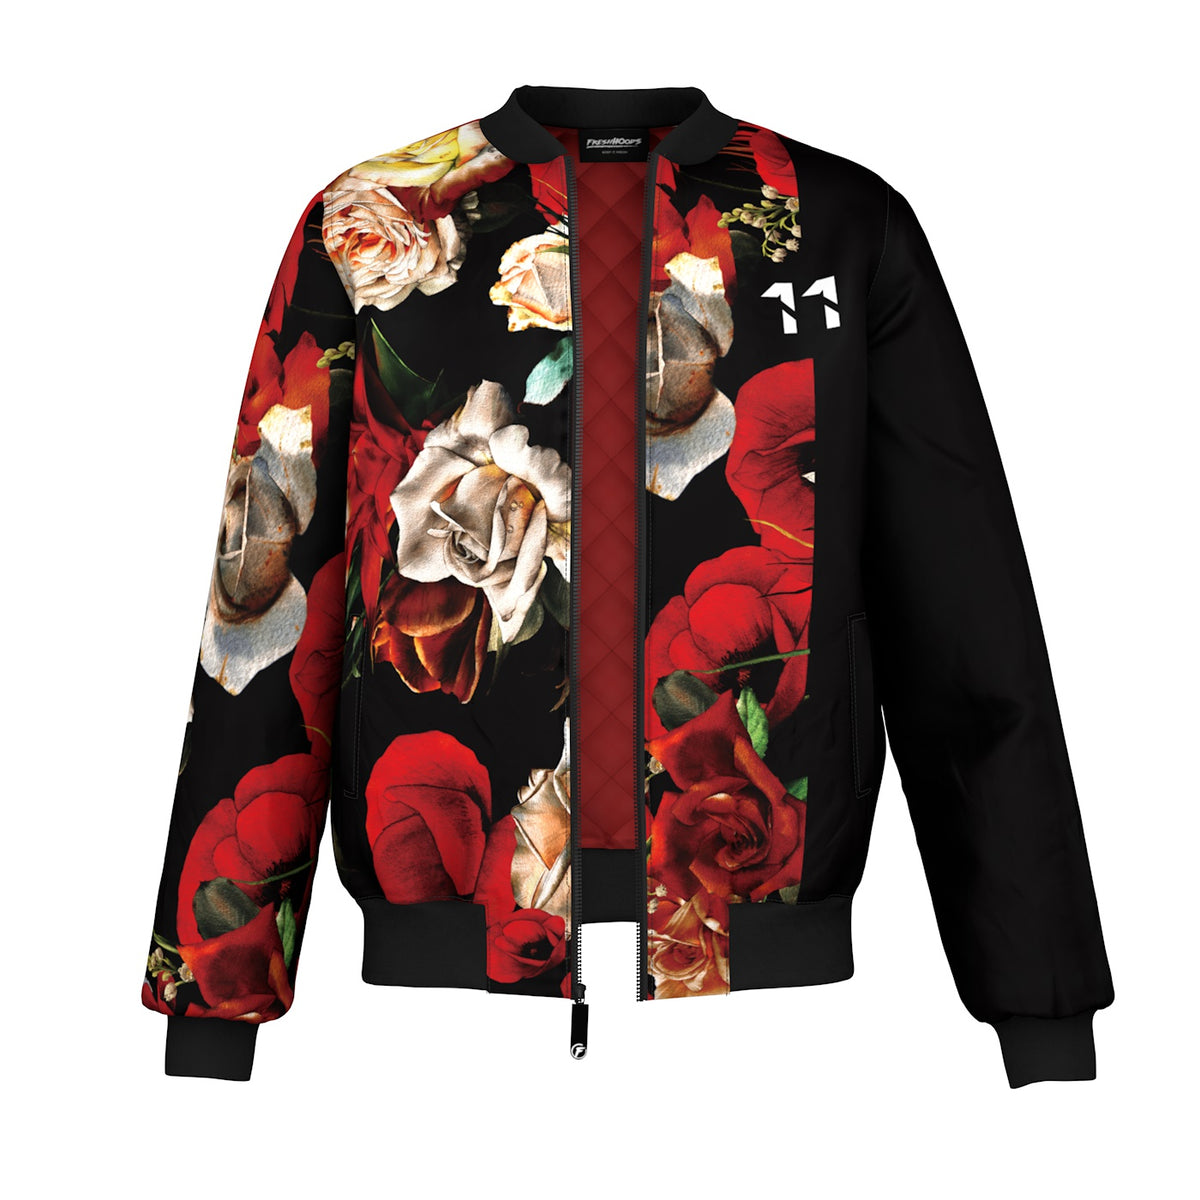 Floral Bomber Jacket, Vibrant Jacket Flower Design